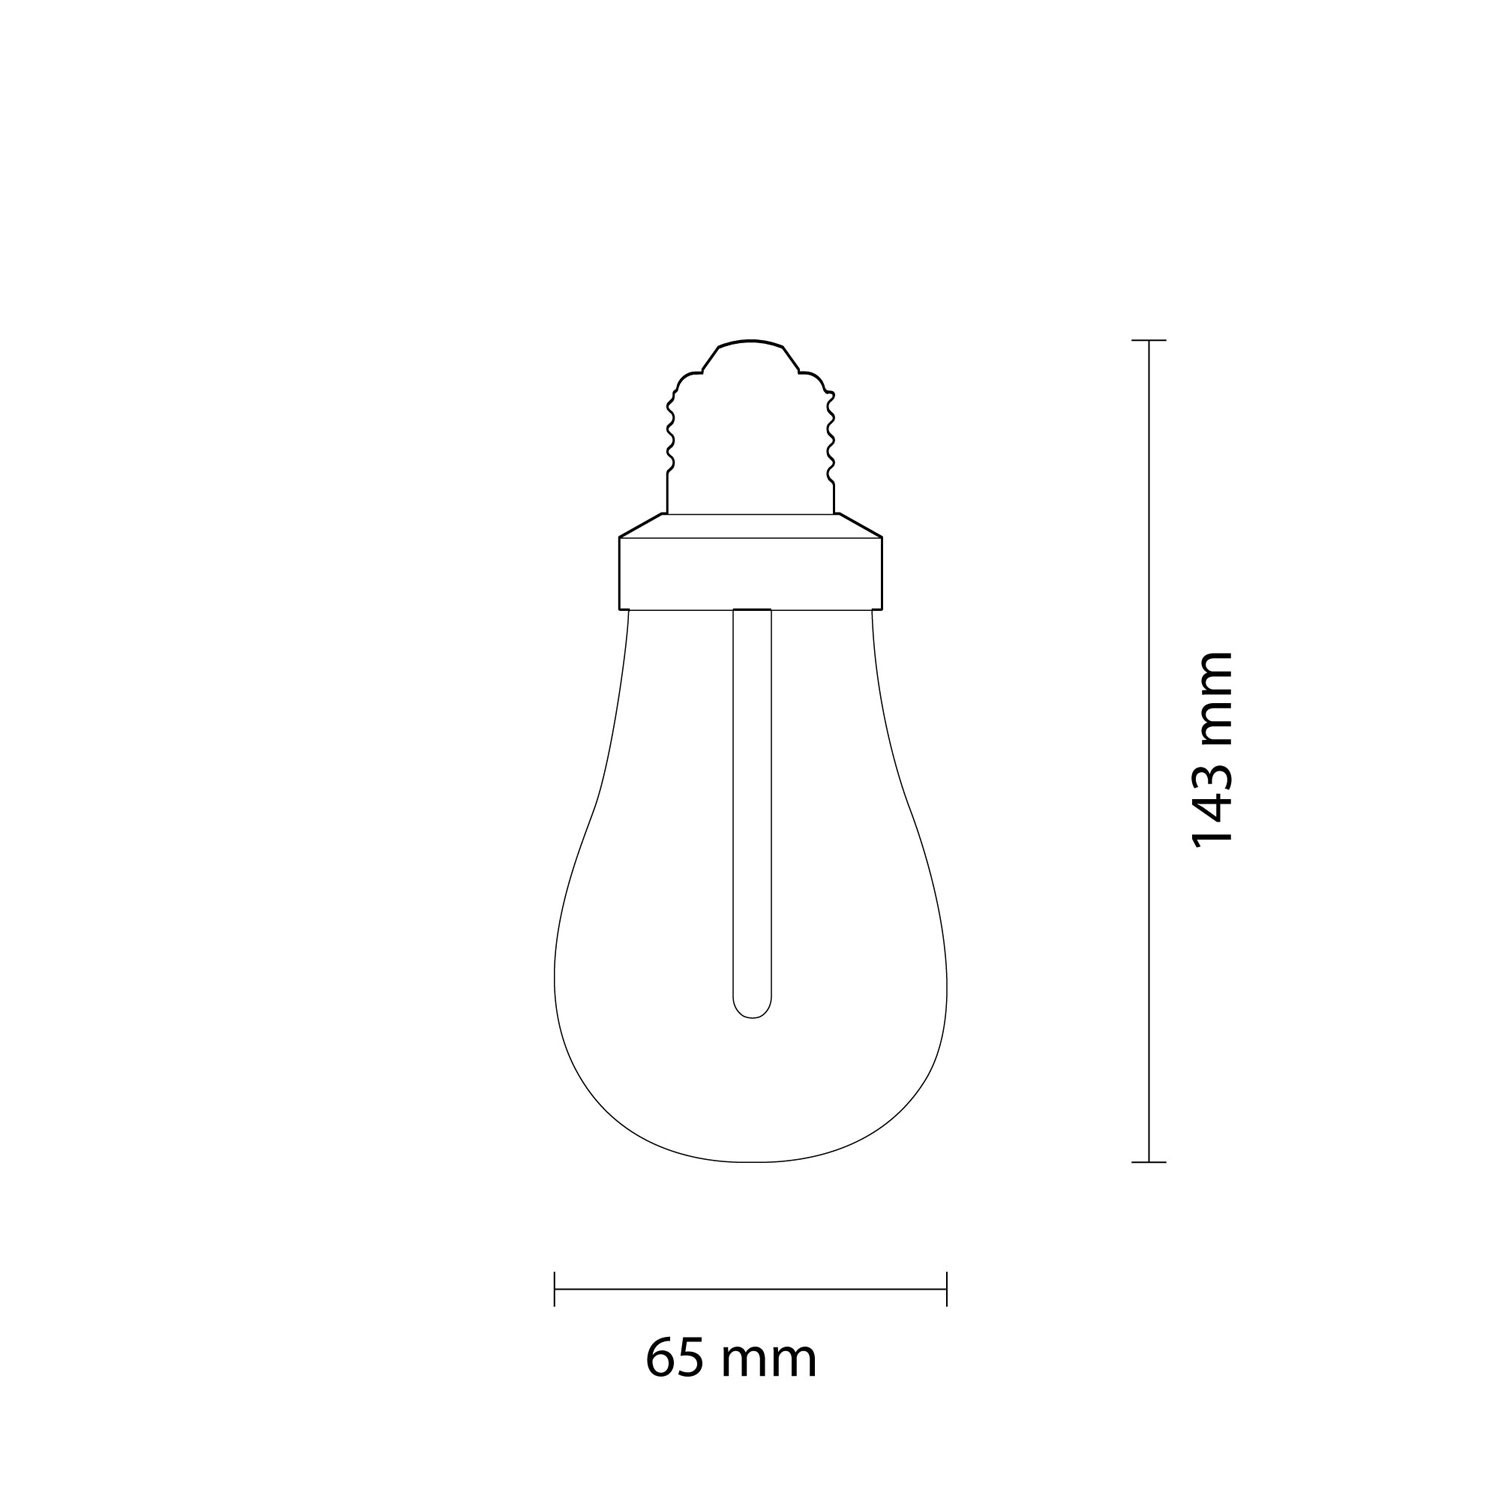 LED Light Bulb Plumen 002 6,5W E27 Dimmable 2200K